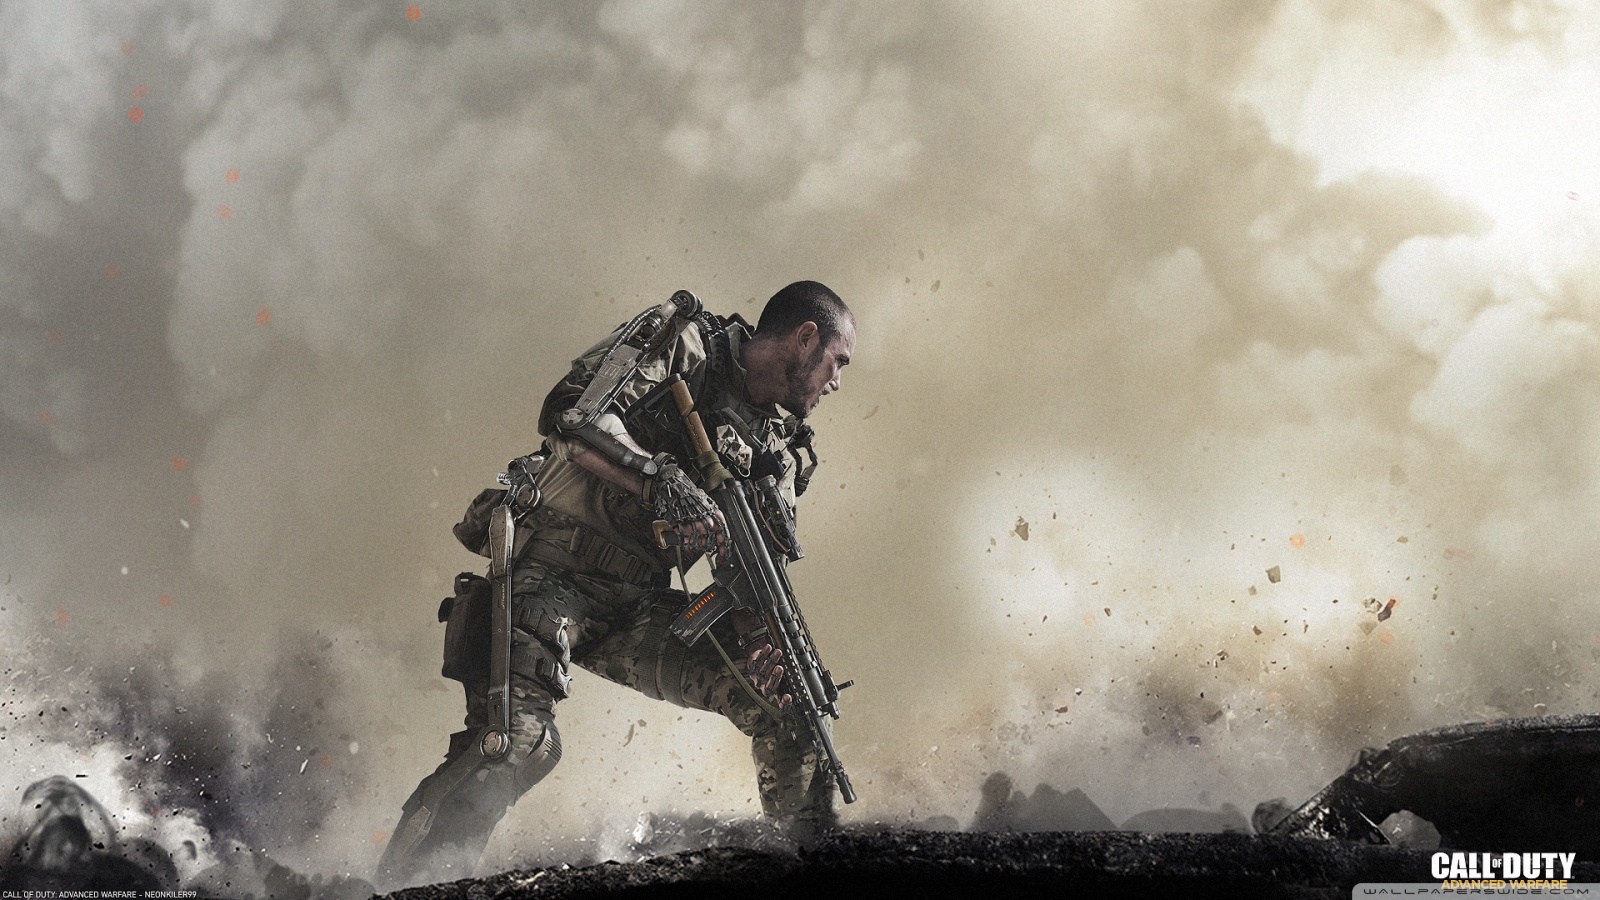 44+] Advanced Warfare Wallpaper HD - WallpaperSafari